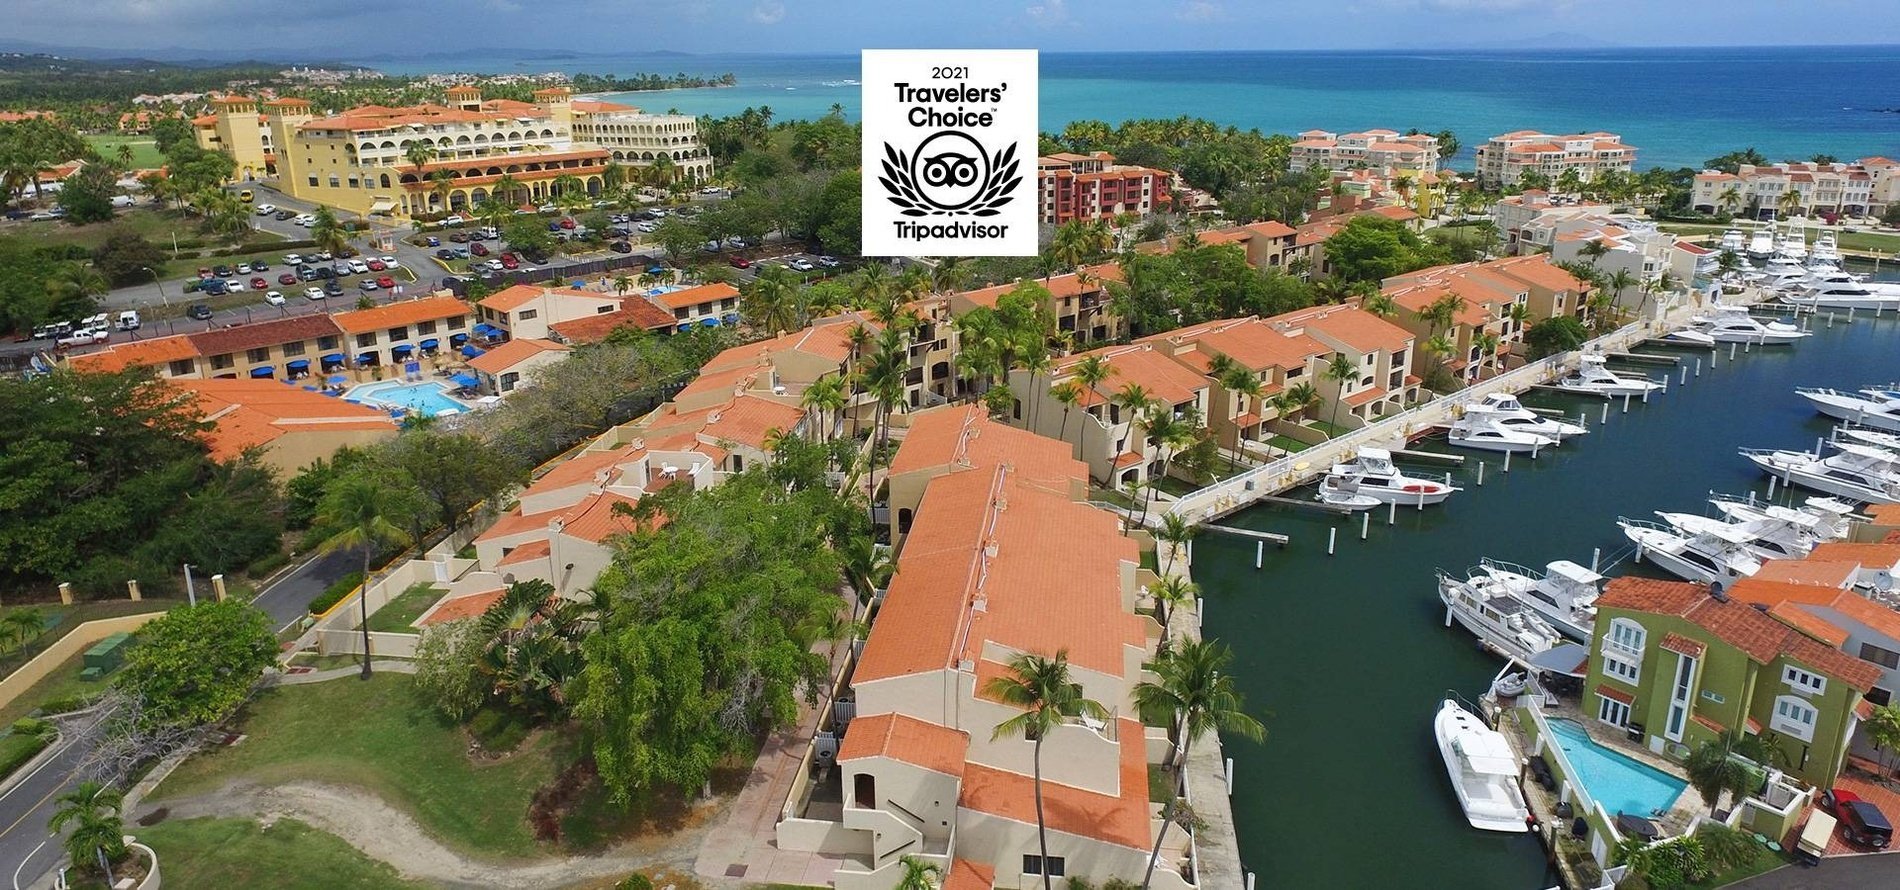 Prêmio TripAdvisor Travelers Choice 2021 para Park Royal Hotels & Resorts Porto Rico